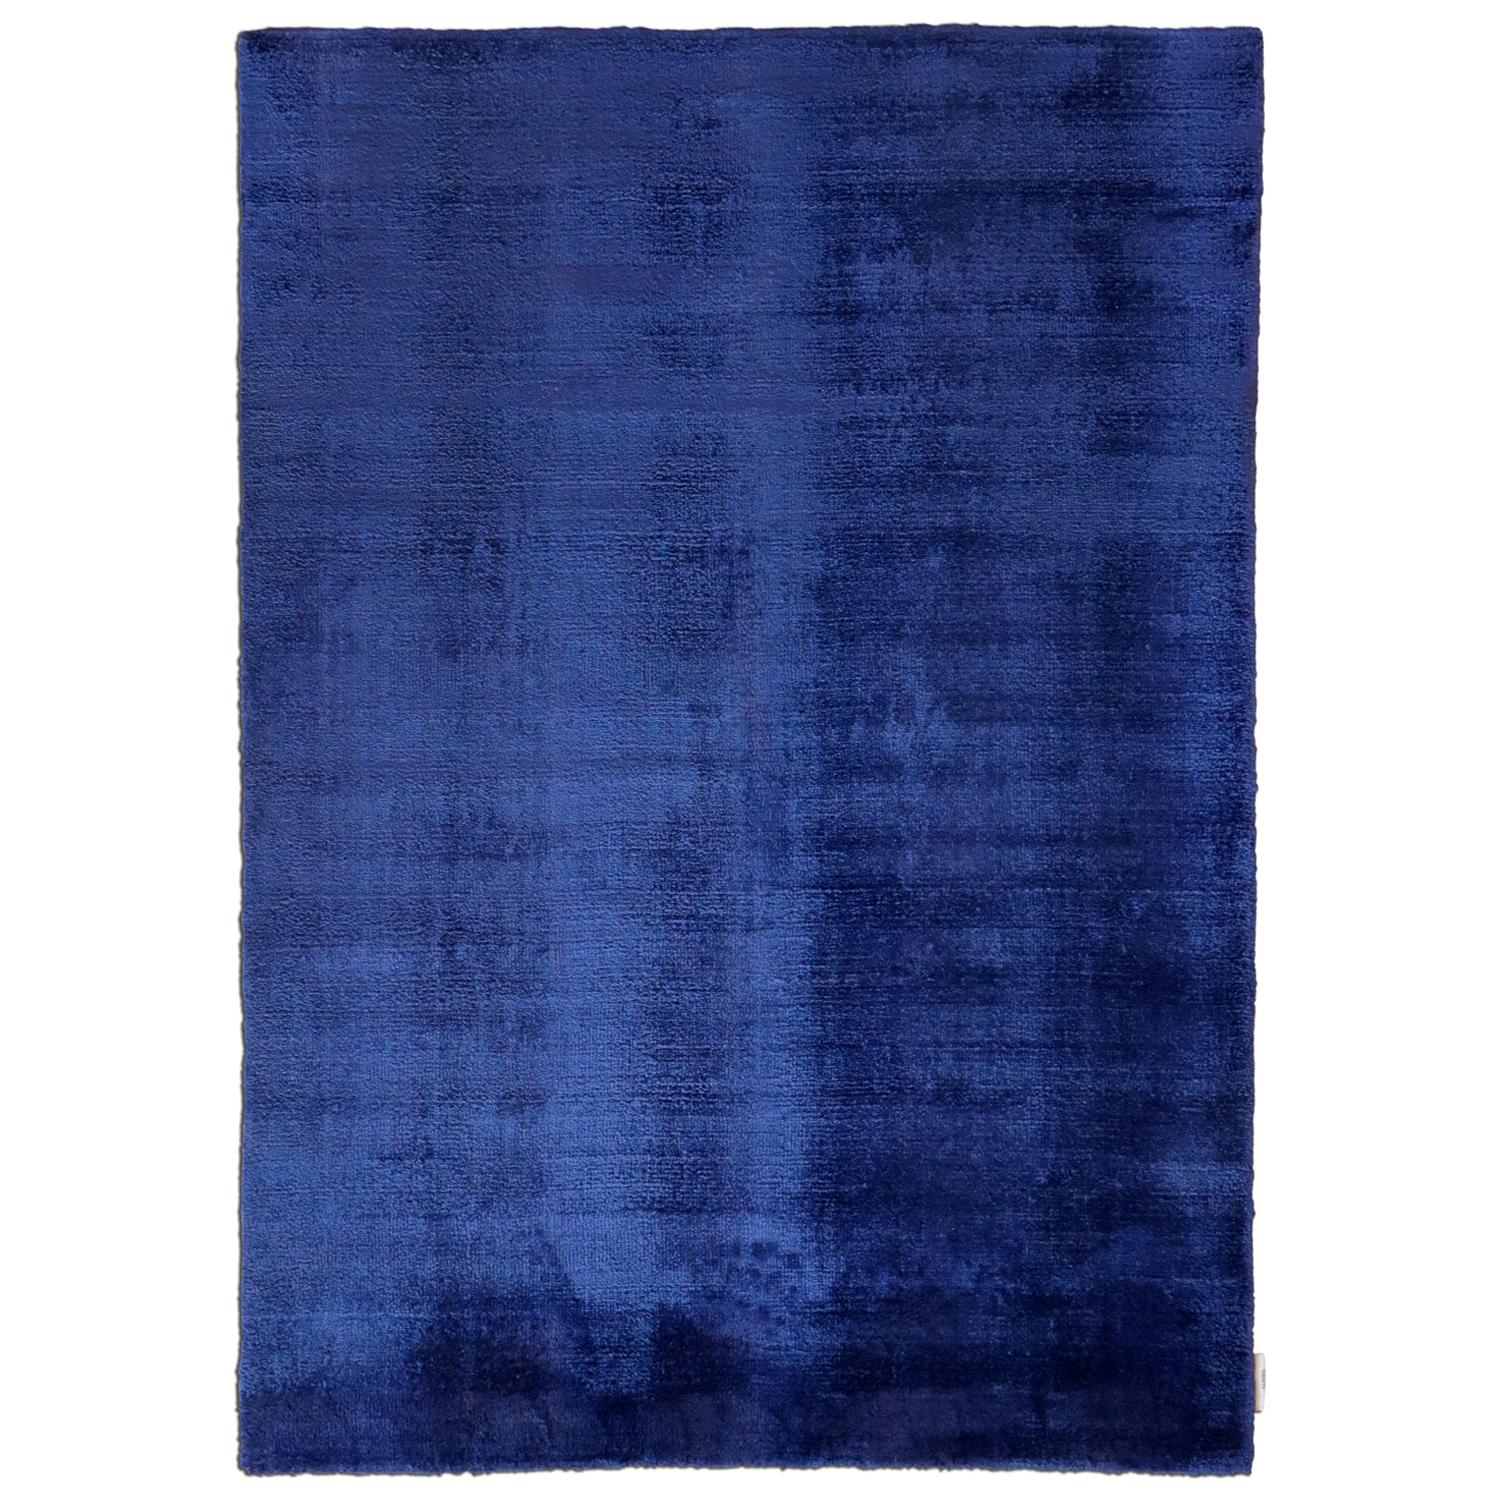 Tapis contemporain bleu foncé doux et soyeux en soie par Deanna Comellini 250 x 350 cm